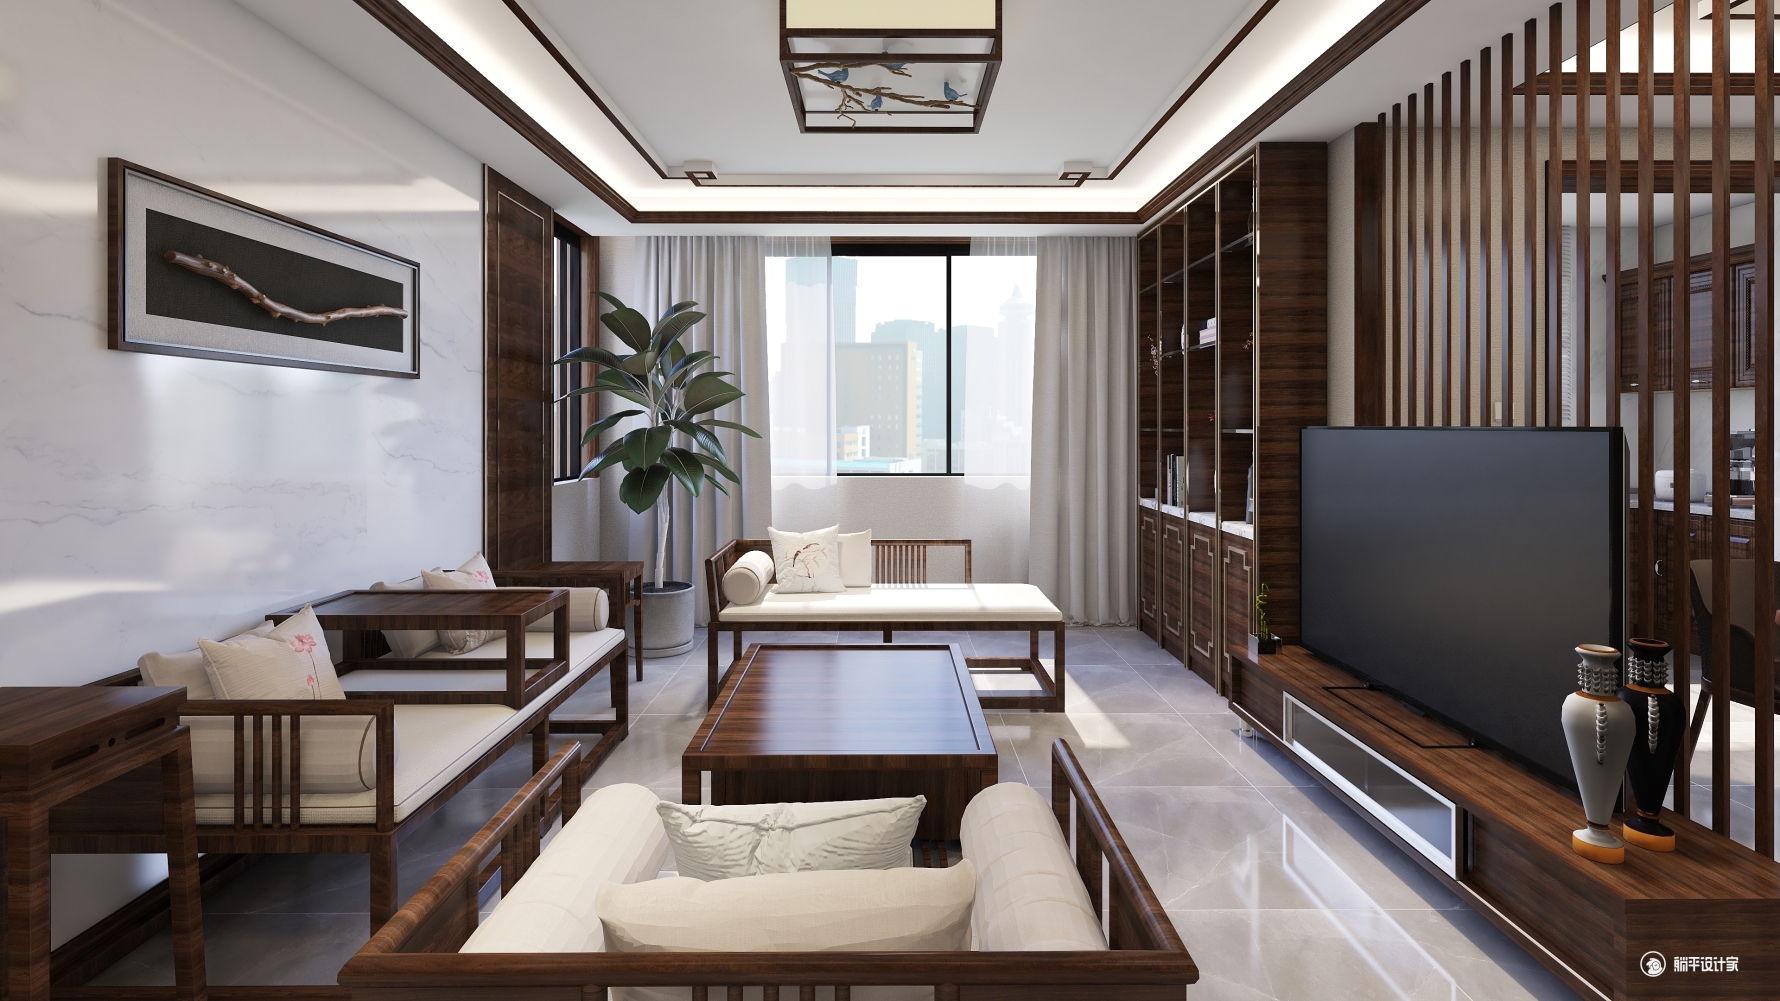 心意 - 中式风格三室两厅装修效果图 - 王佳佳设计效果图 - 躺平设计家